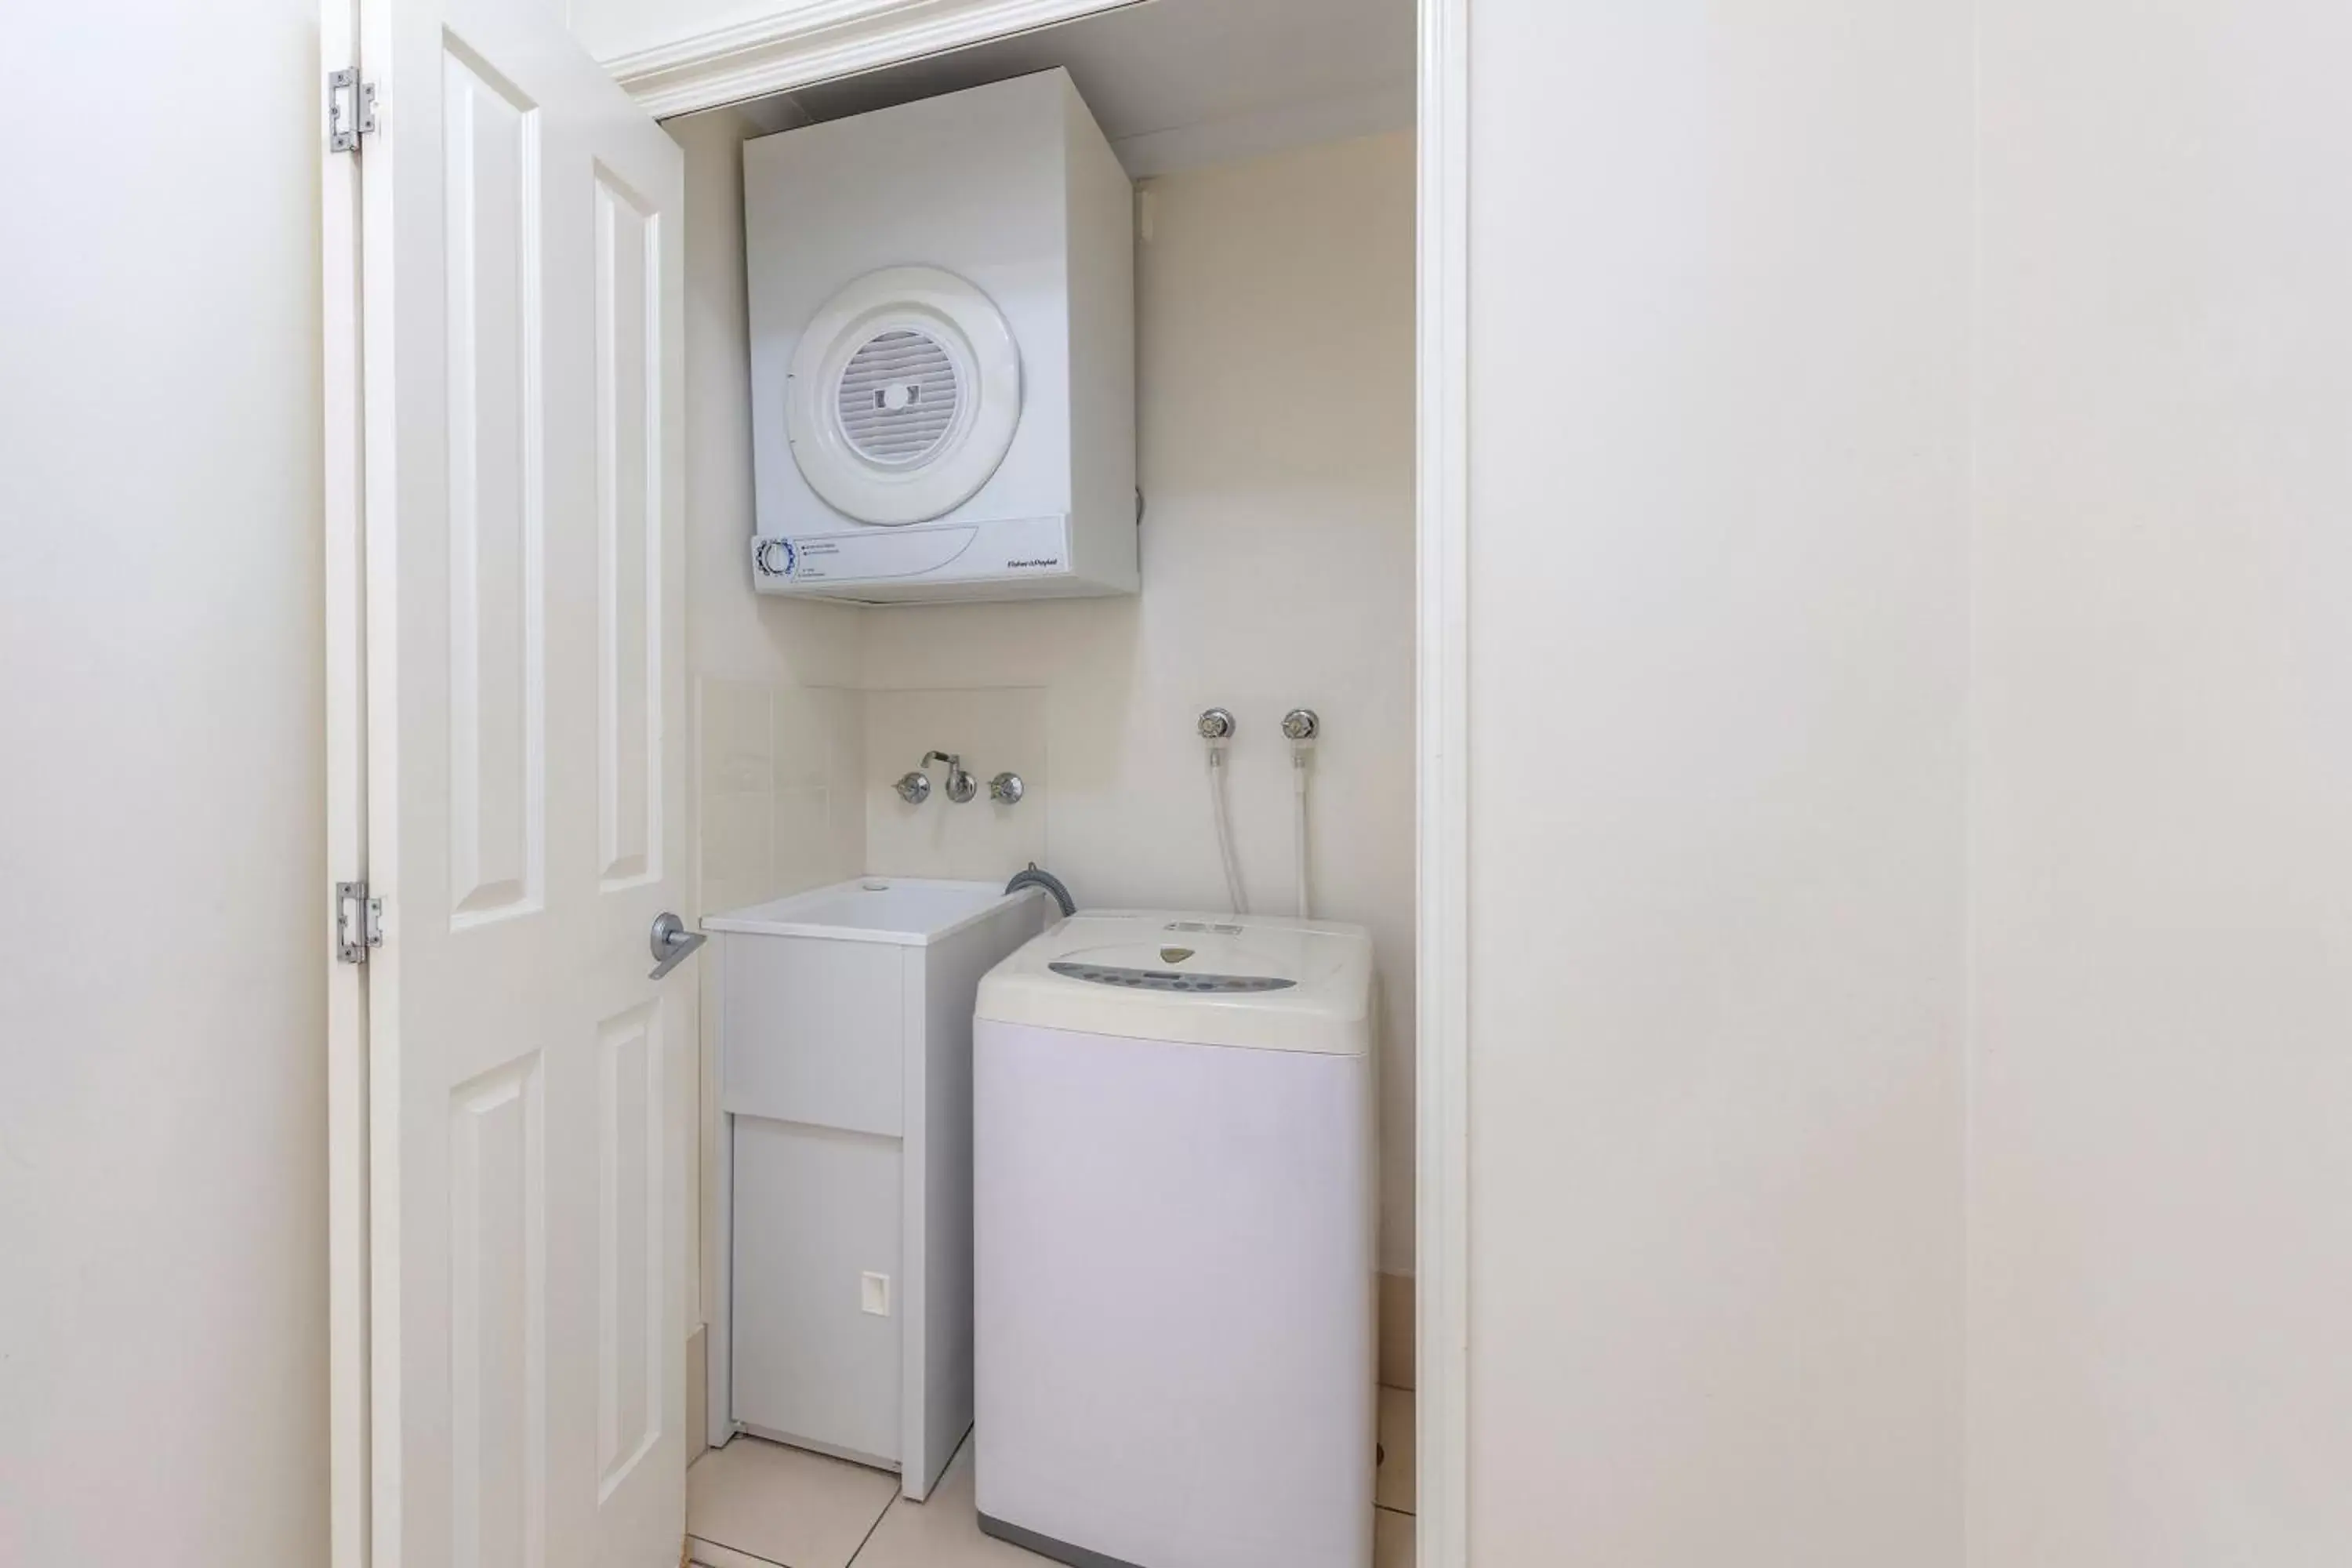 Area and facilities, Bathroom in Park Regis City Quays